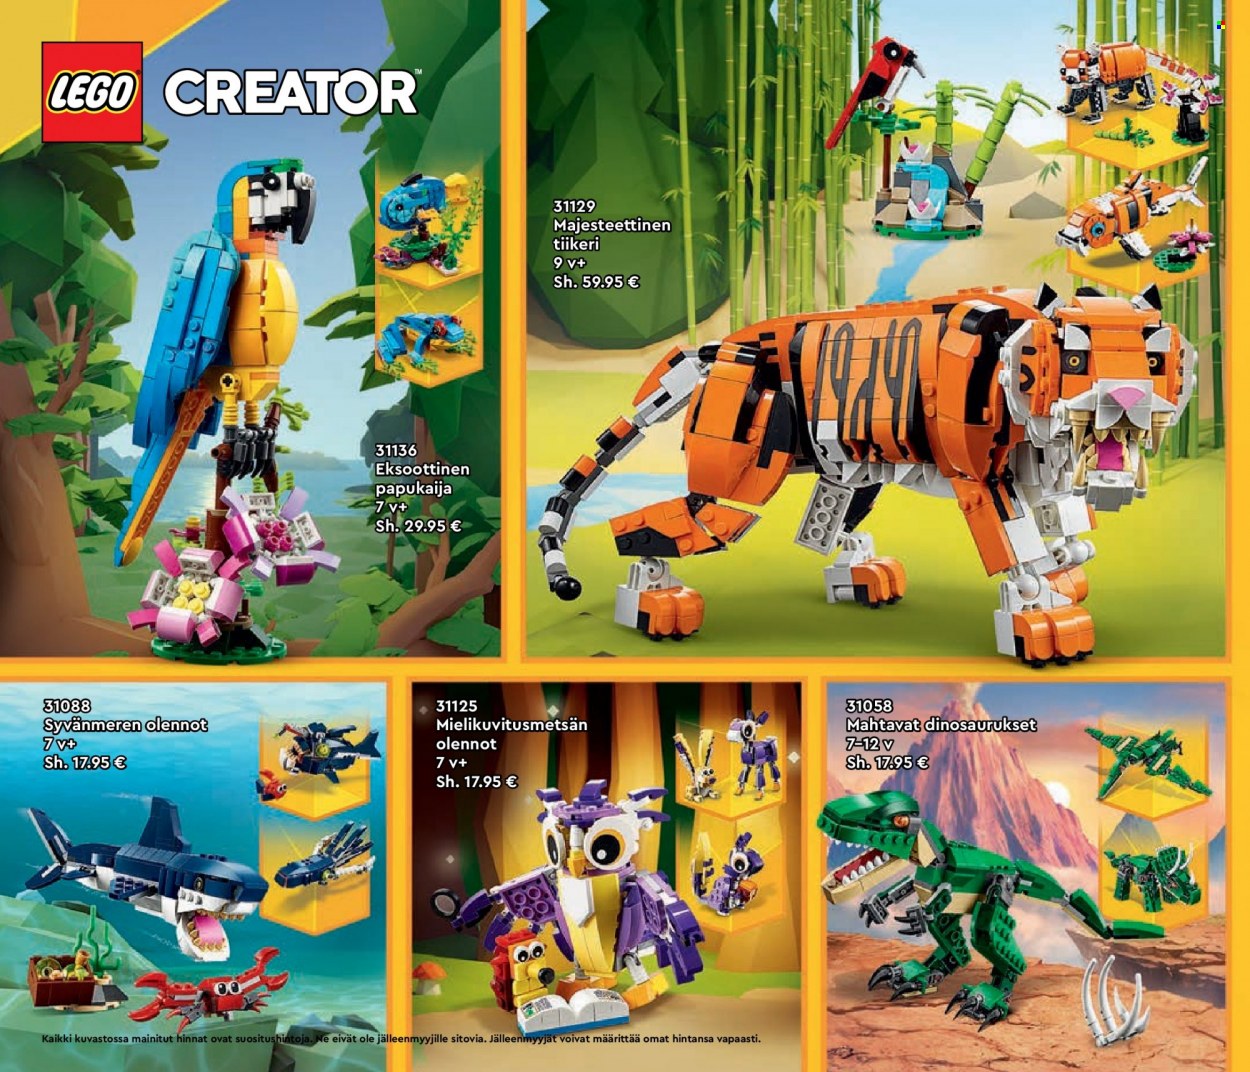 Tokmanni tarjoukset  - Tarjoustuotteet - LEGO, papukaija, LEGO Creator, tiikeri. Sivu 50.